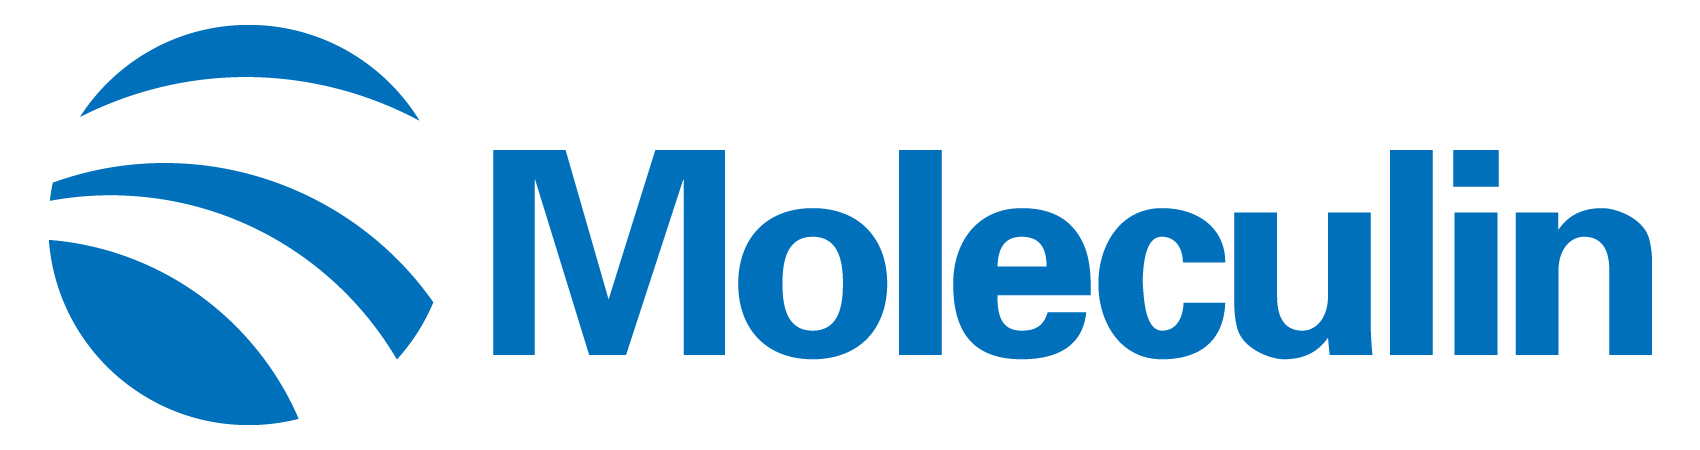 moleculin-logo_horiza24.jpg